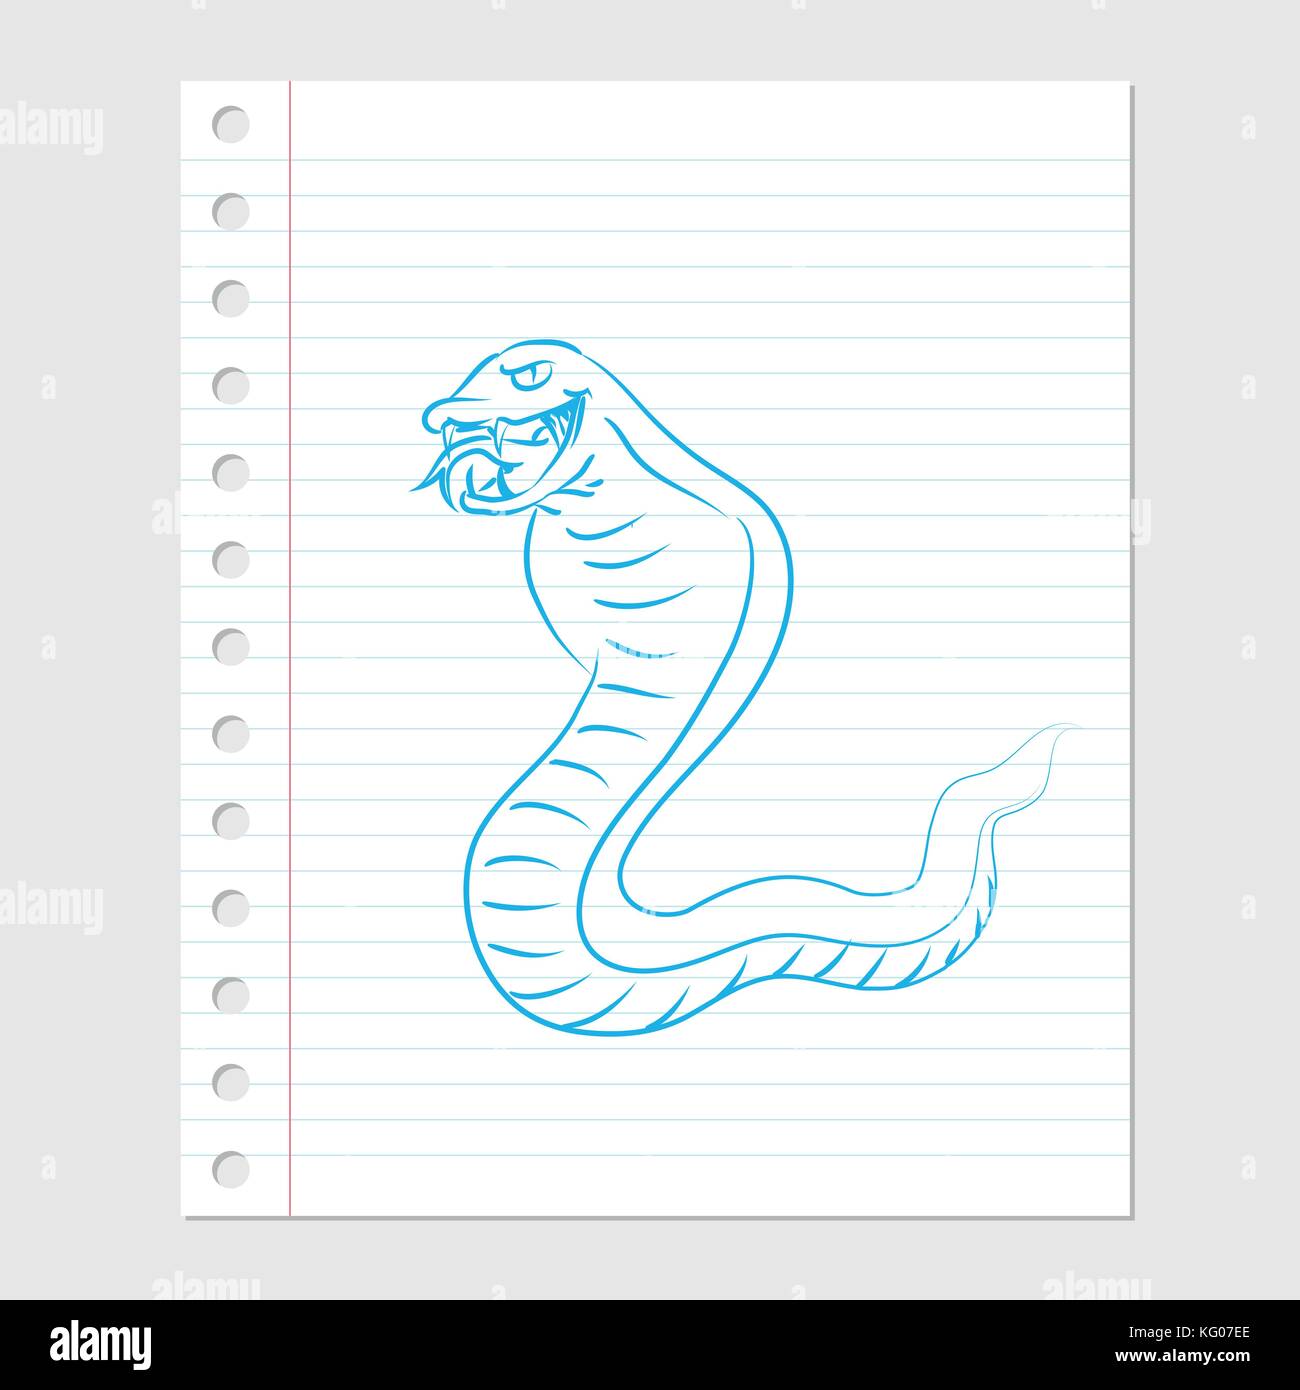 Illustrazione di snake cartoon sul foglio di carta con le linee, margine e fori-illustrazione vettoriale Illustrazione Vettoriale